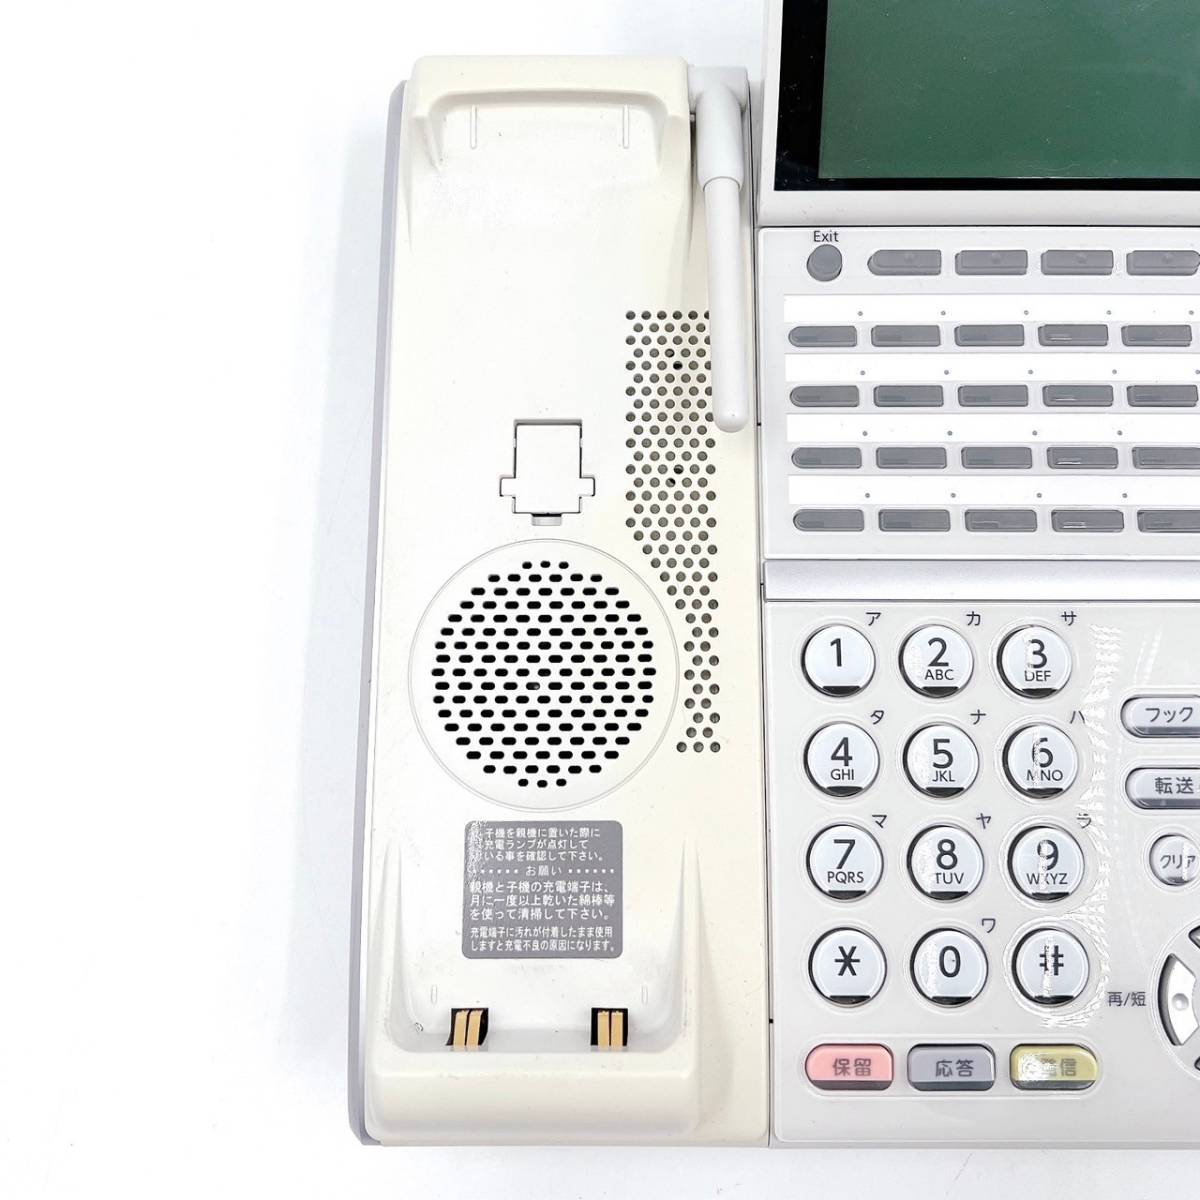  Япония электрический NEC DTZ-24BT-3D(WH)TEL Aspire UX 24 кнопка Karl беспроводной цифровой многофункциональный телефонный аппарат рабочий товар #2